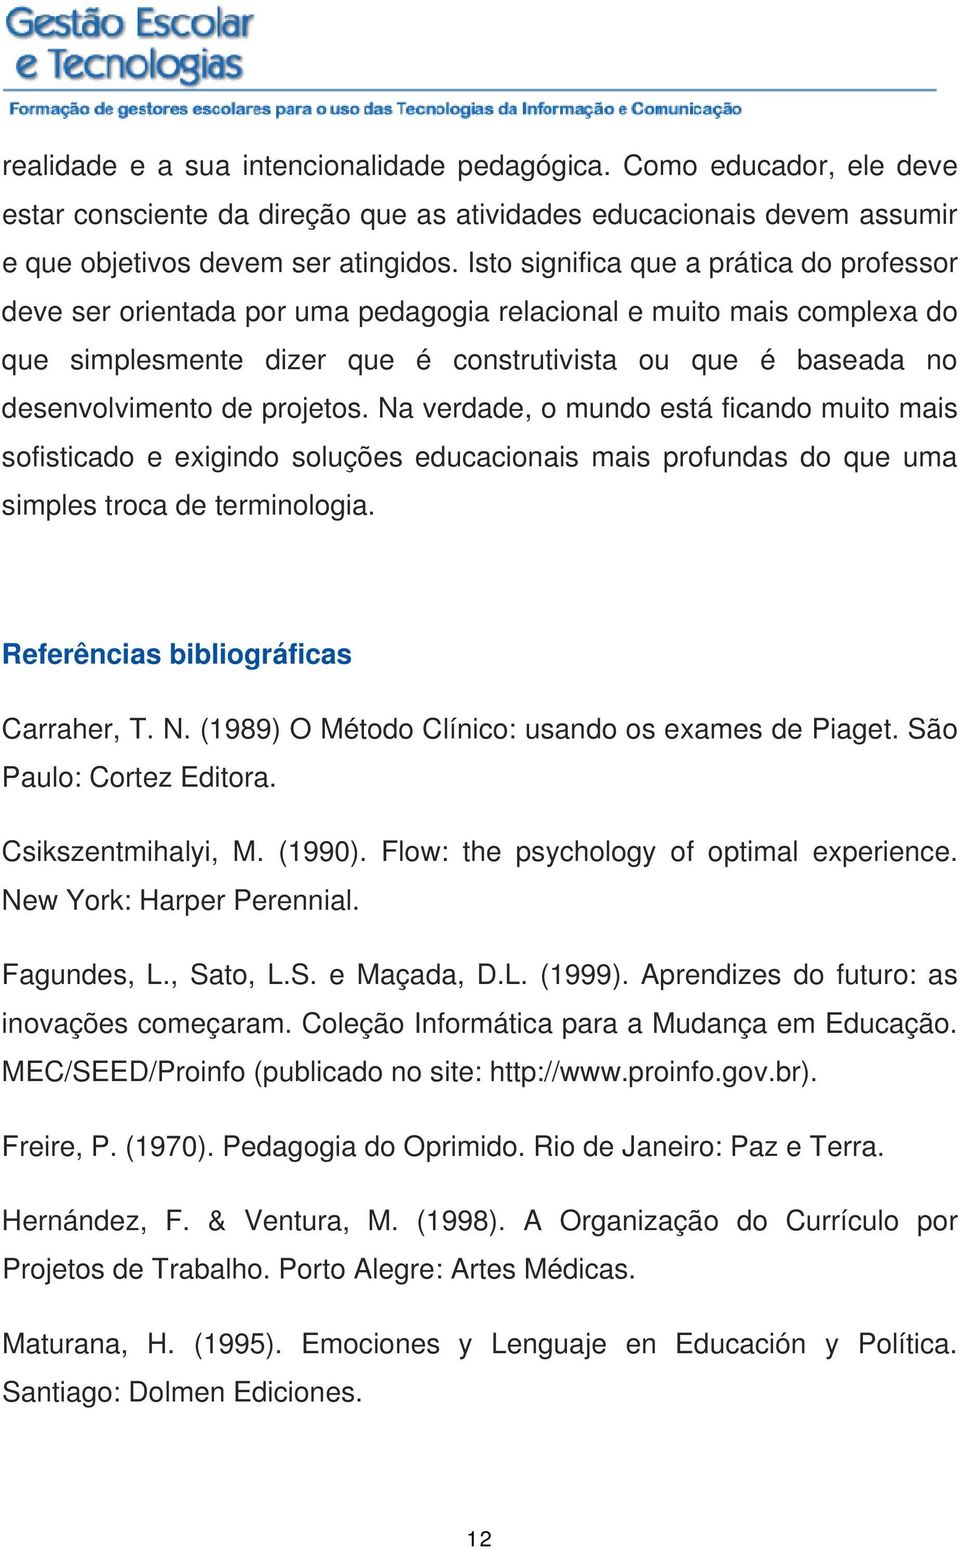 projetos. Na verdade, o mundo está ficando muito mais sofisticado e exigindo soluções educacionais mais profundas do que uma simples troca de terminologia. Referências bibliográficas Carraher, T. N. (1989) O Método Clínico: usando os exames de Piaget.